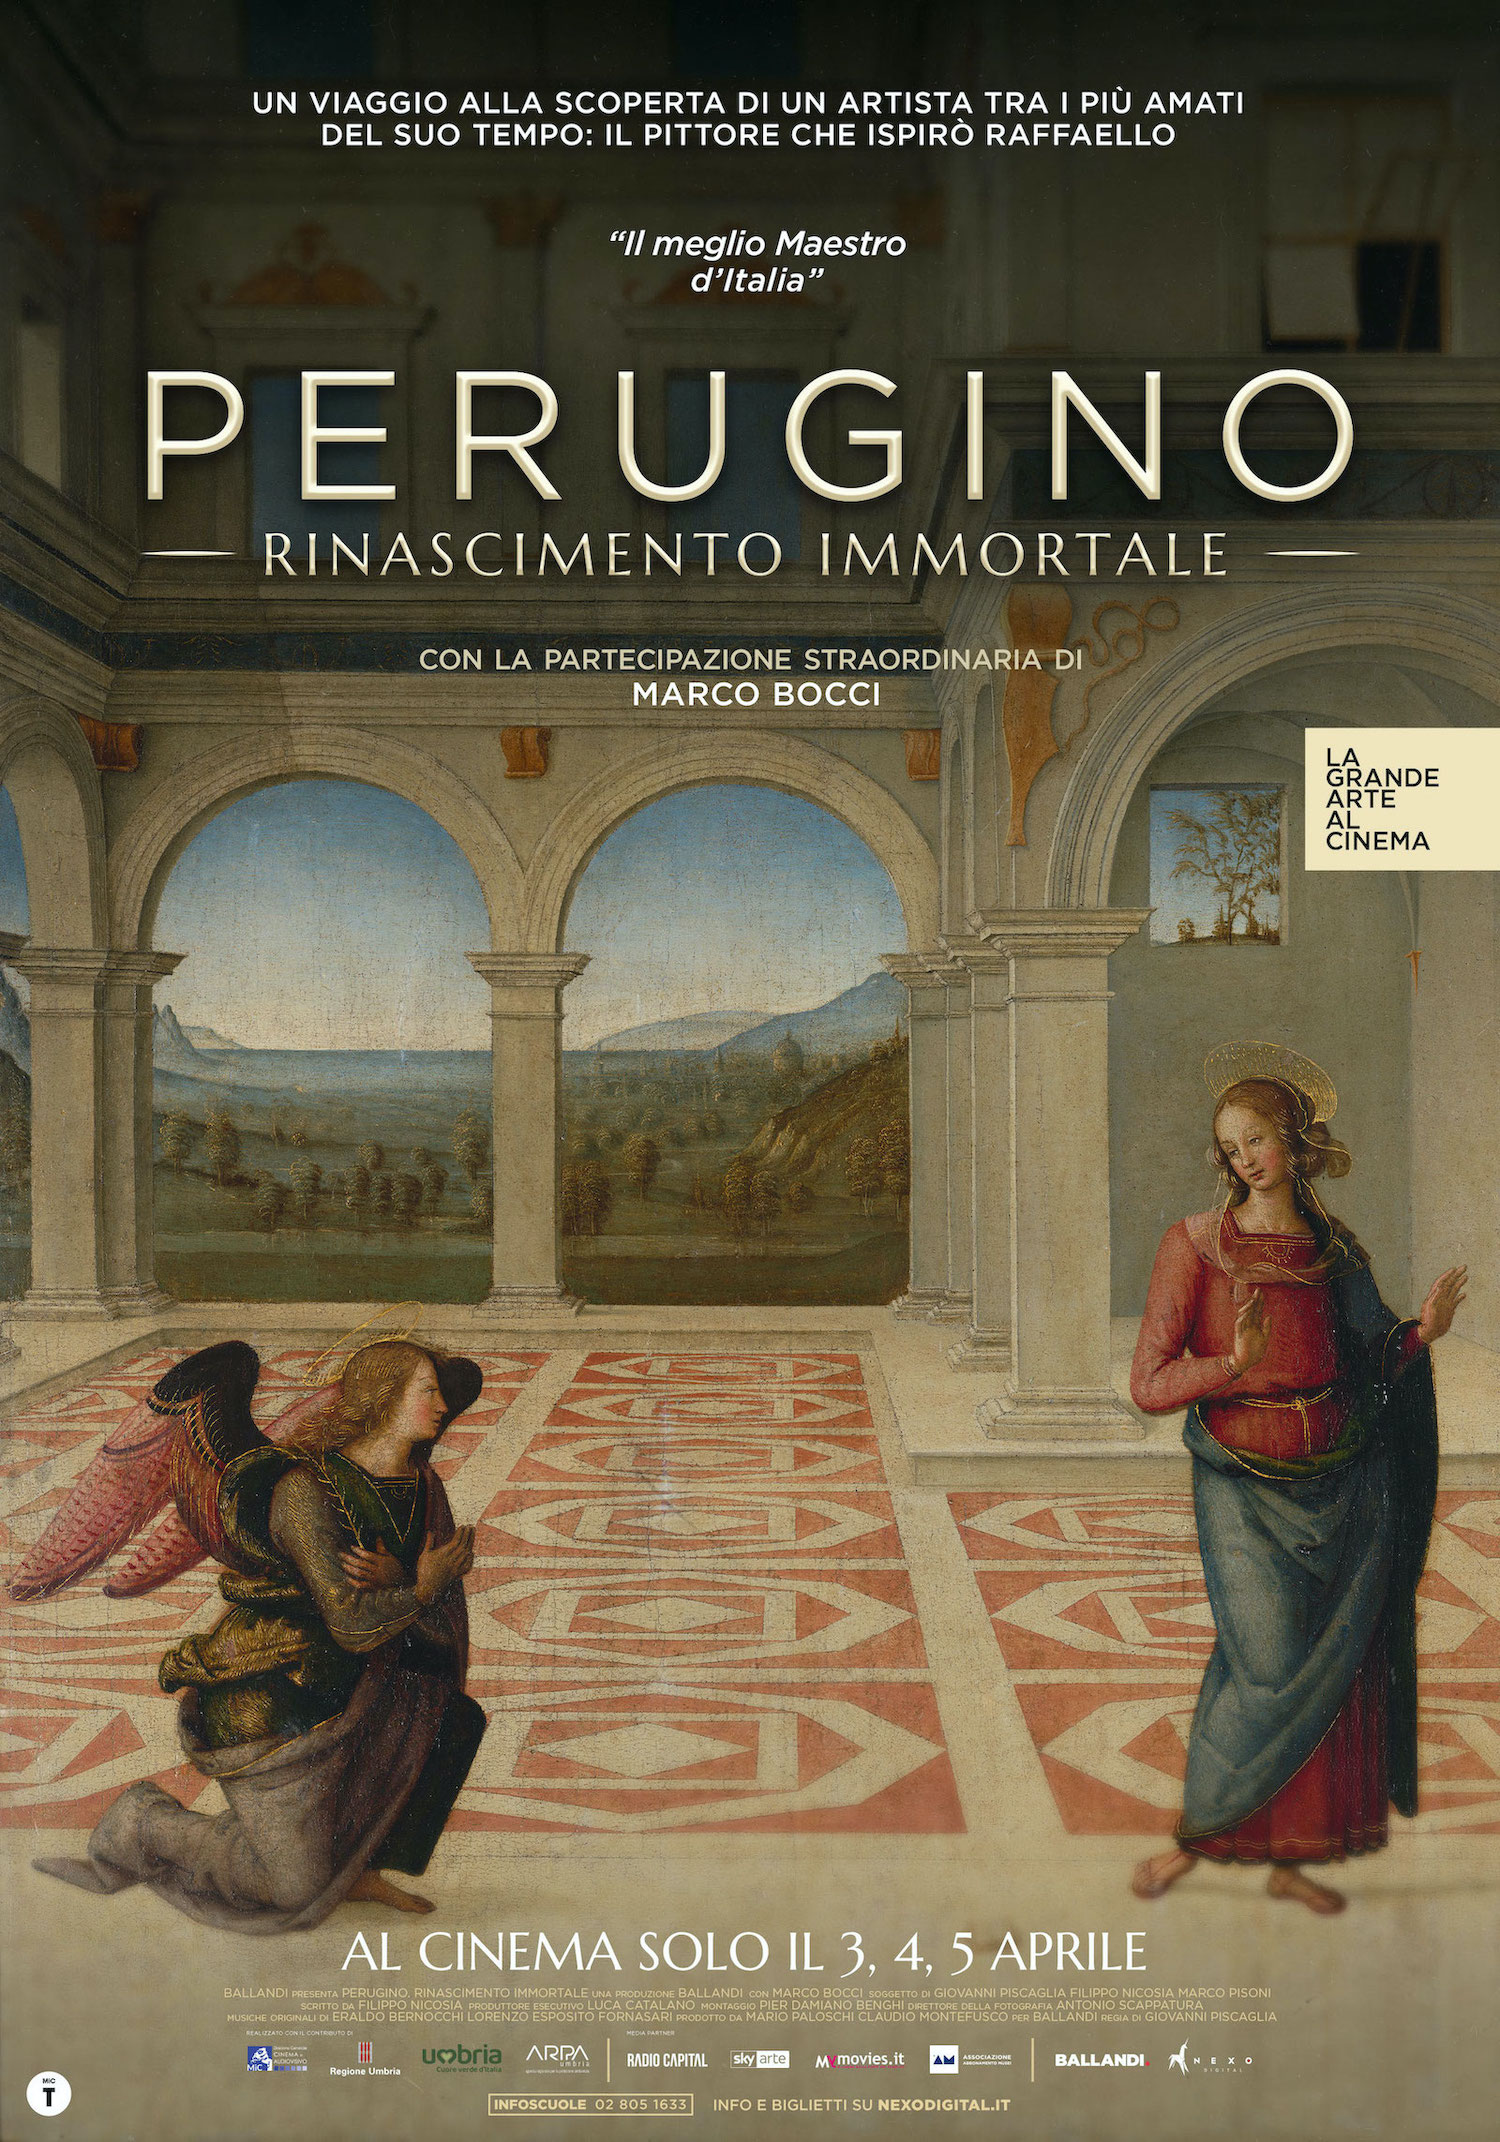 Perugino Rinascimento immortale